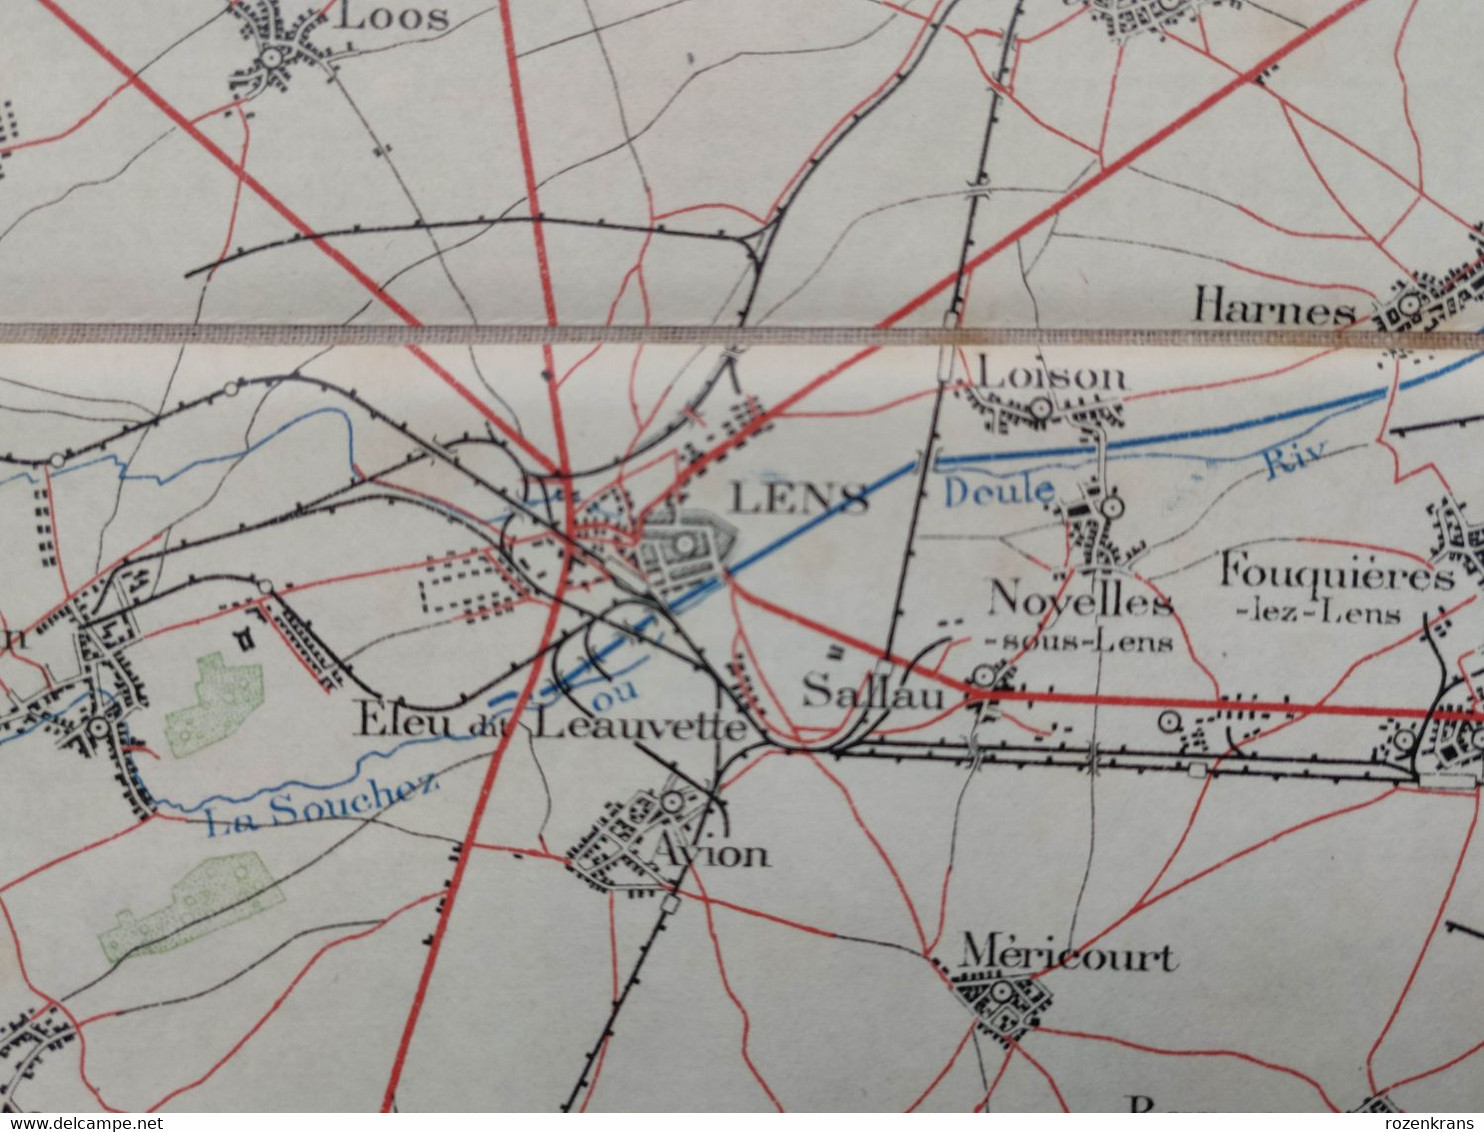 Carte topographique toilée militaire STAFKAART 1912 Tournai Roubaix Lille Armentieres Lens Douai